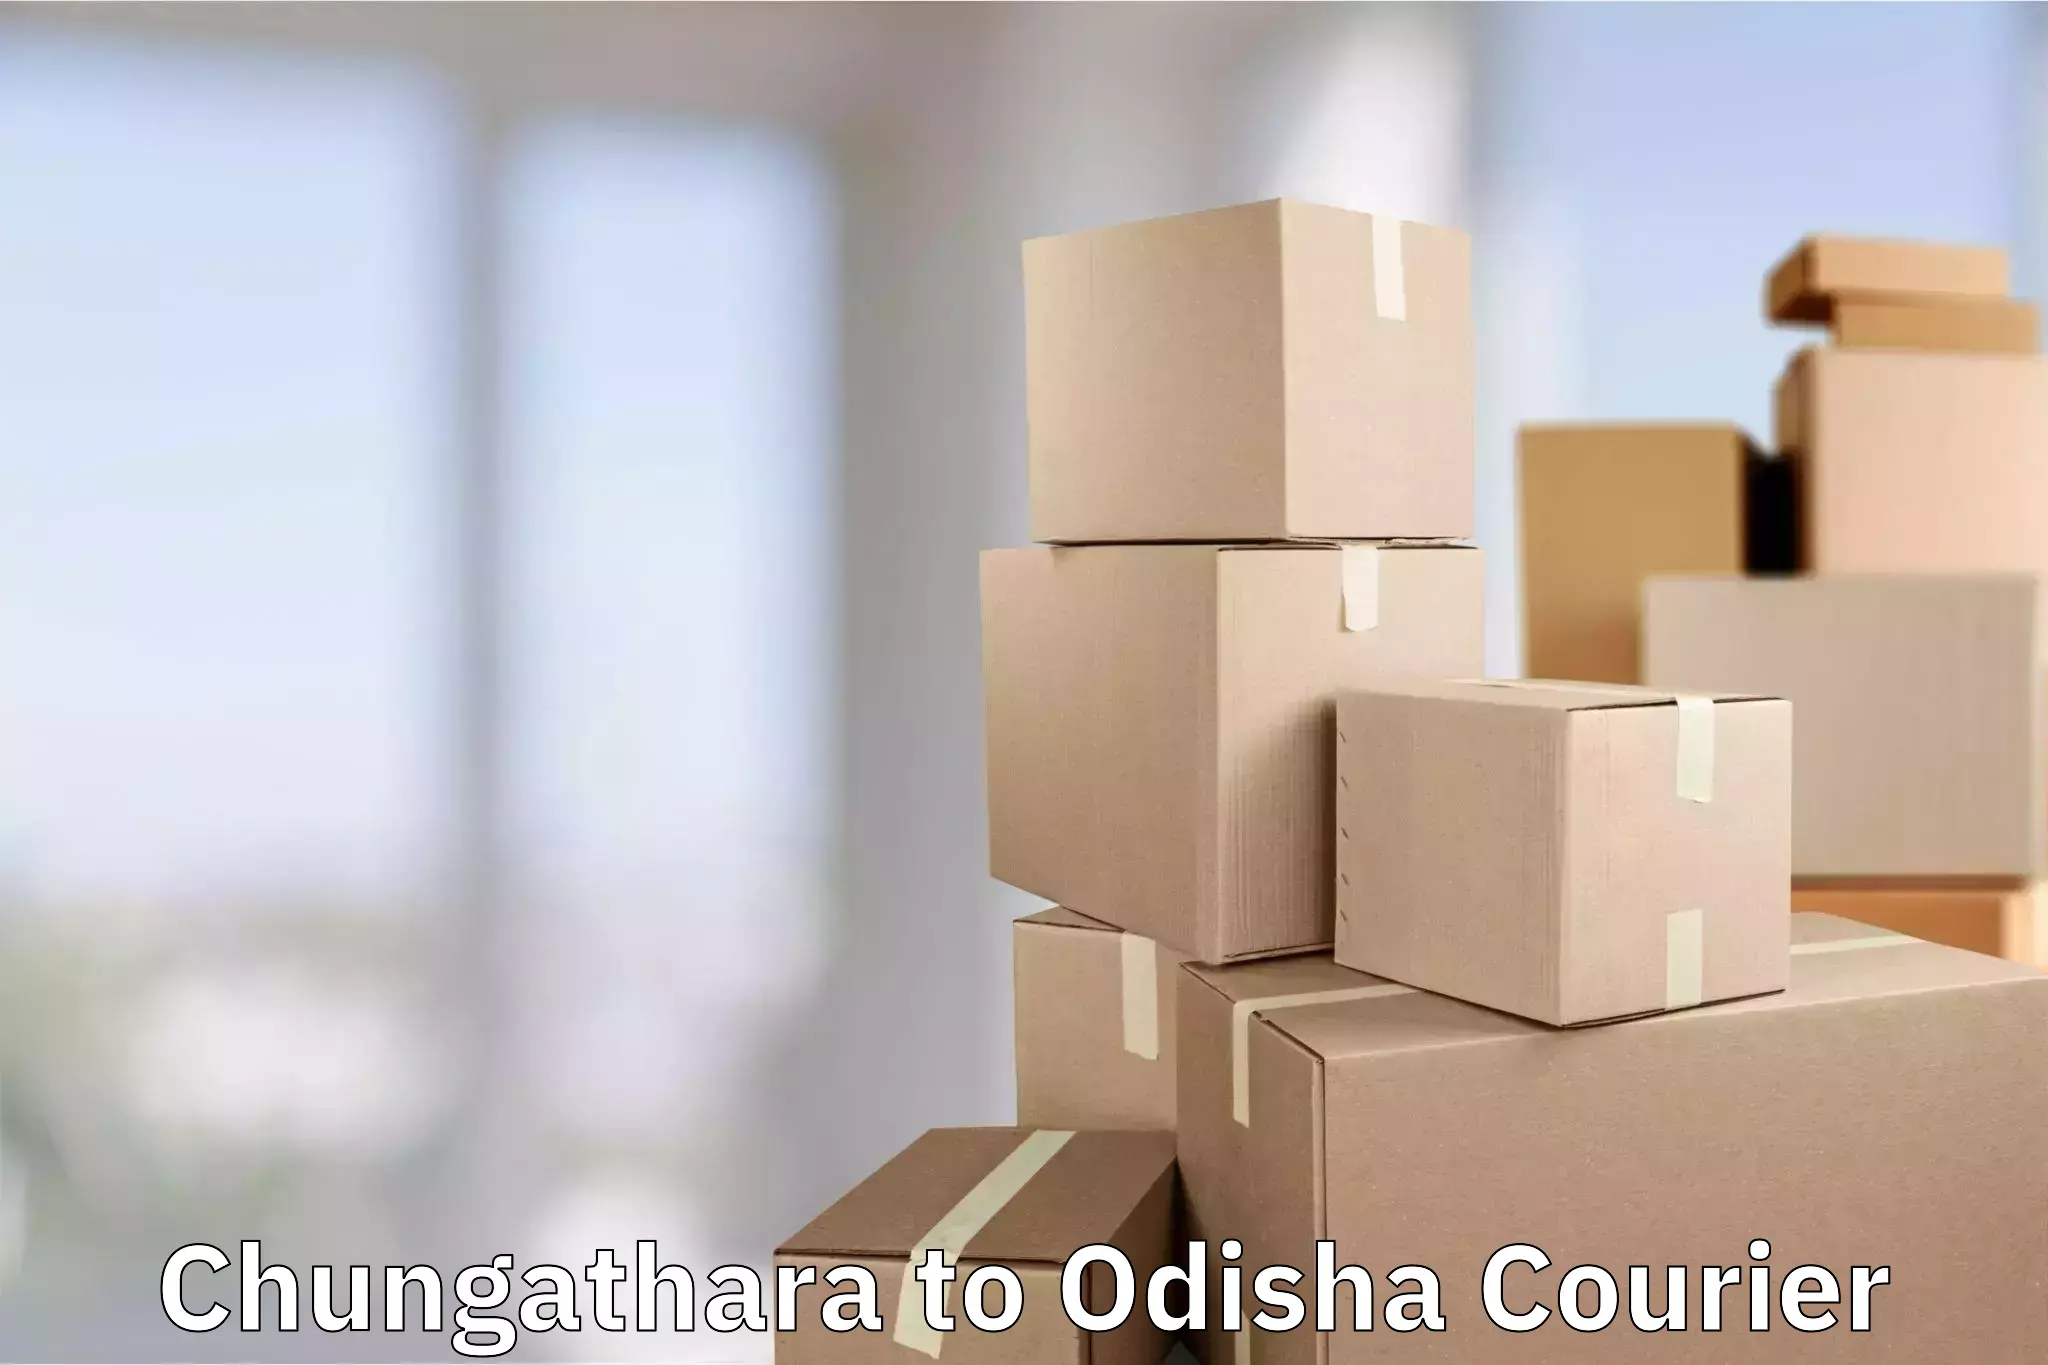 Customized luggage delivery Chungathara to Odisha